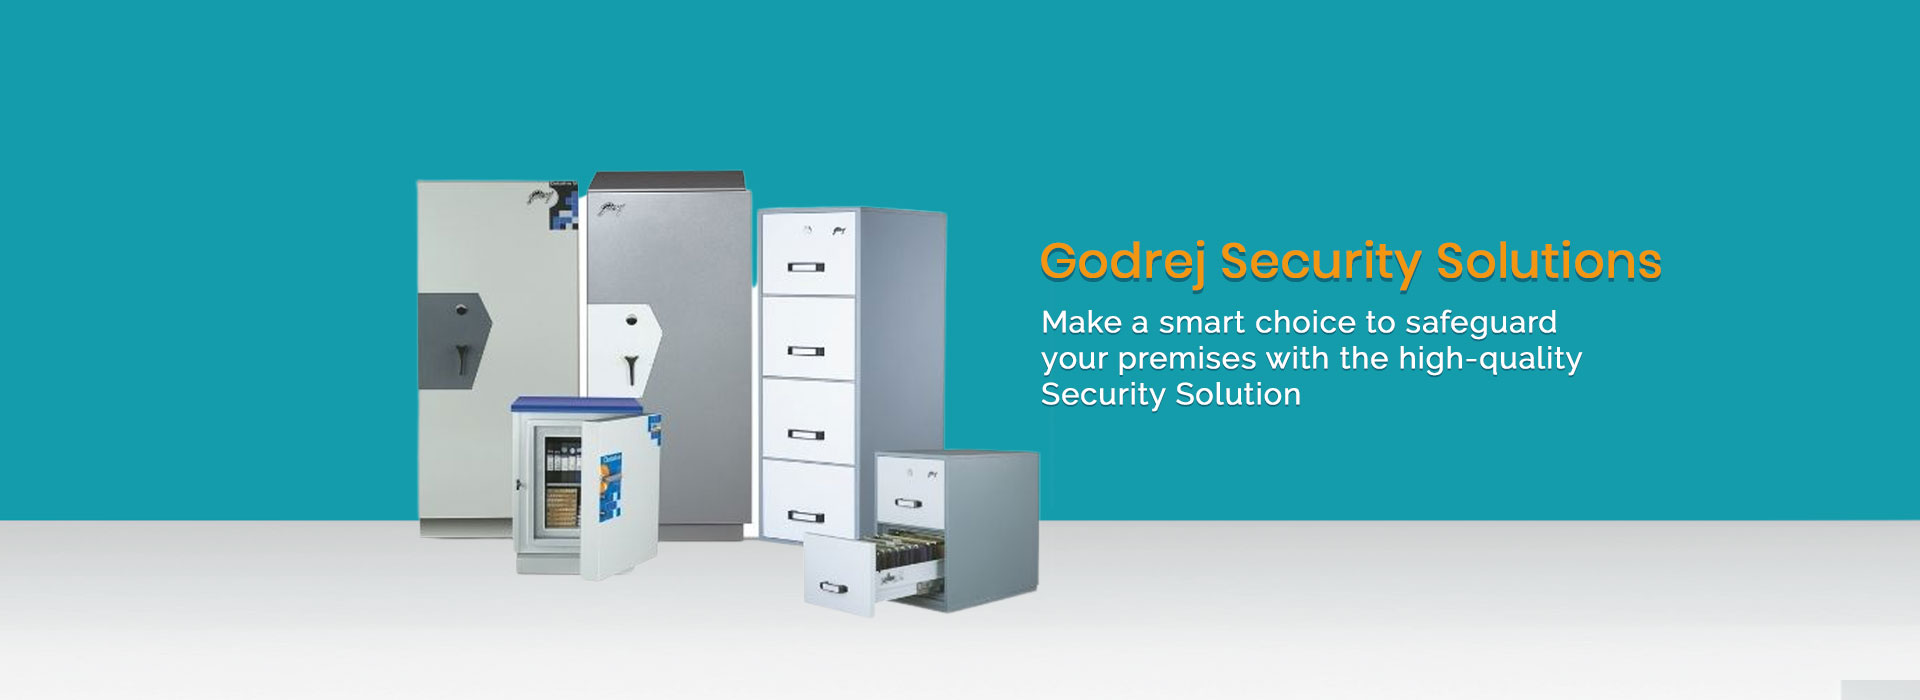 Godrej Security Solutions in Vasant Kunj